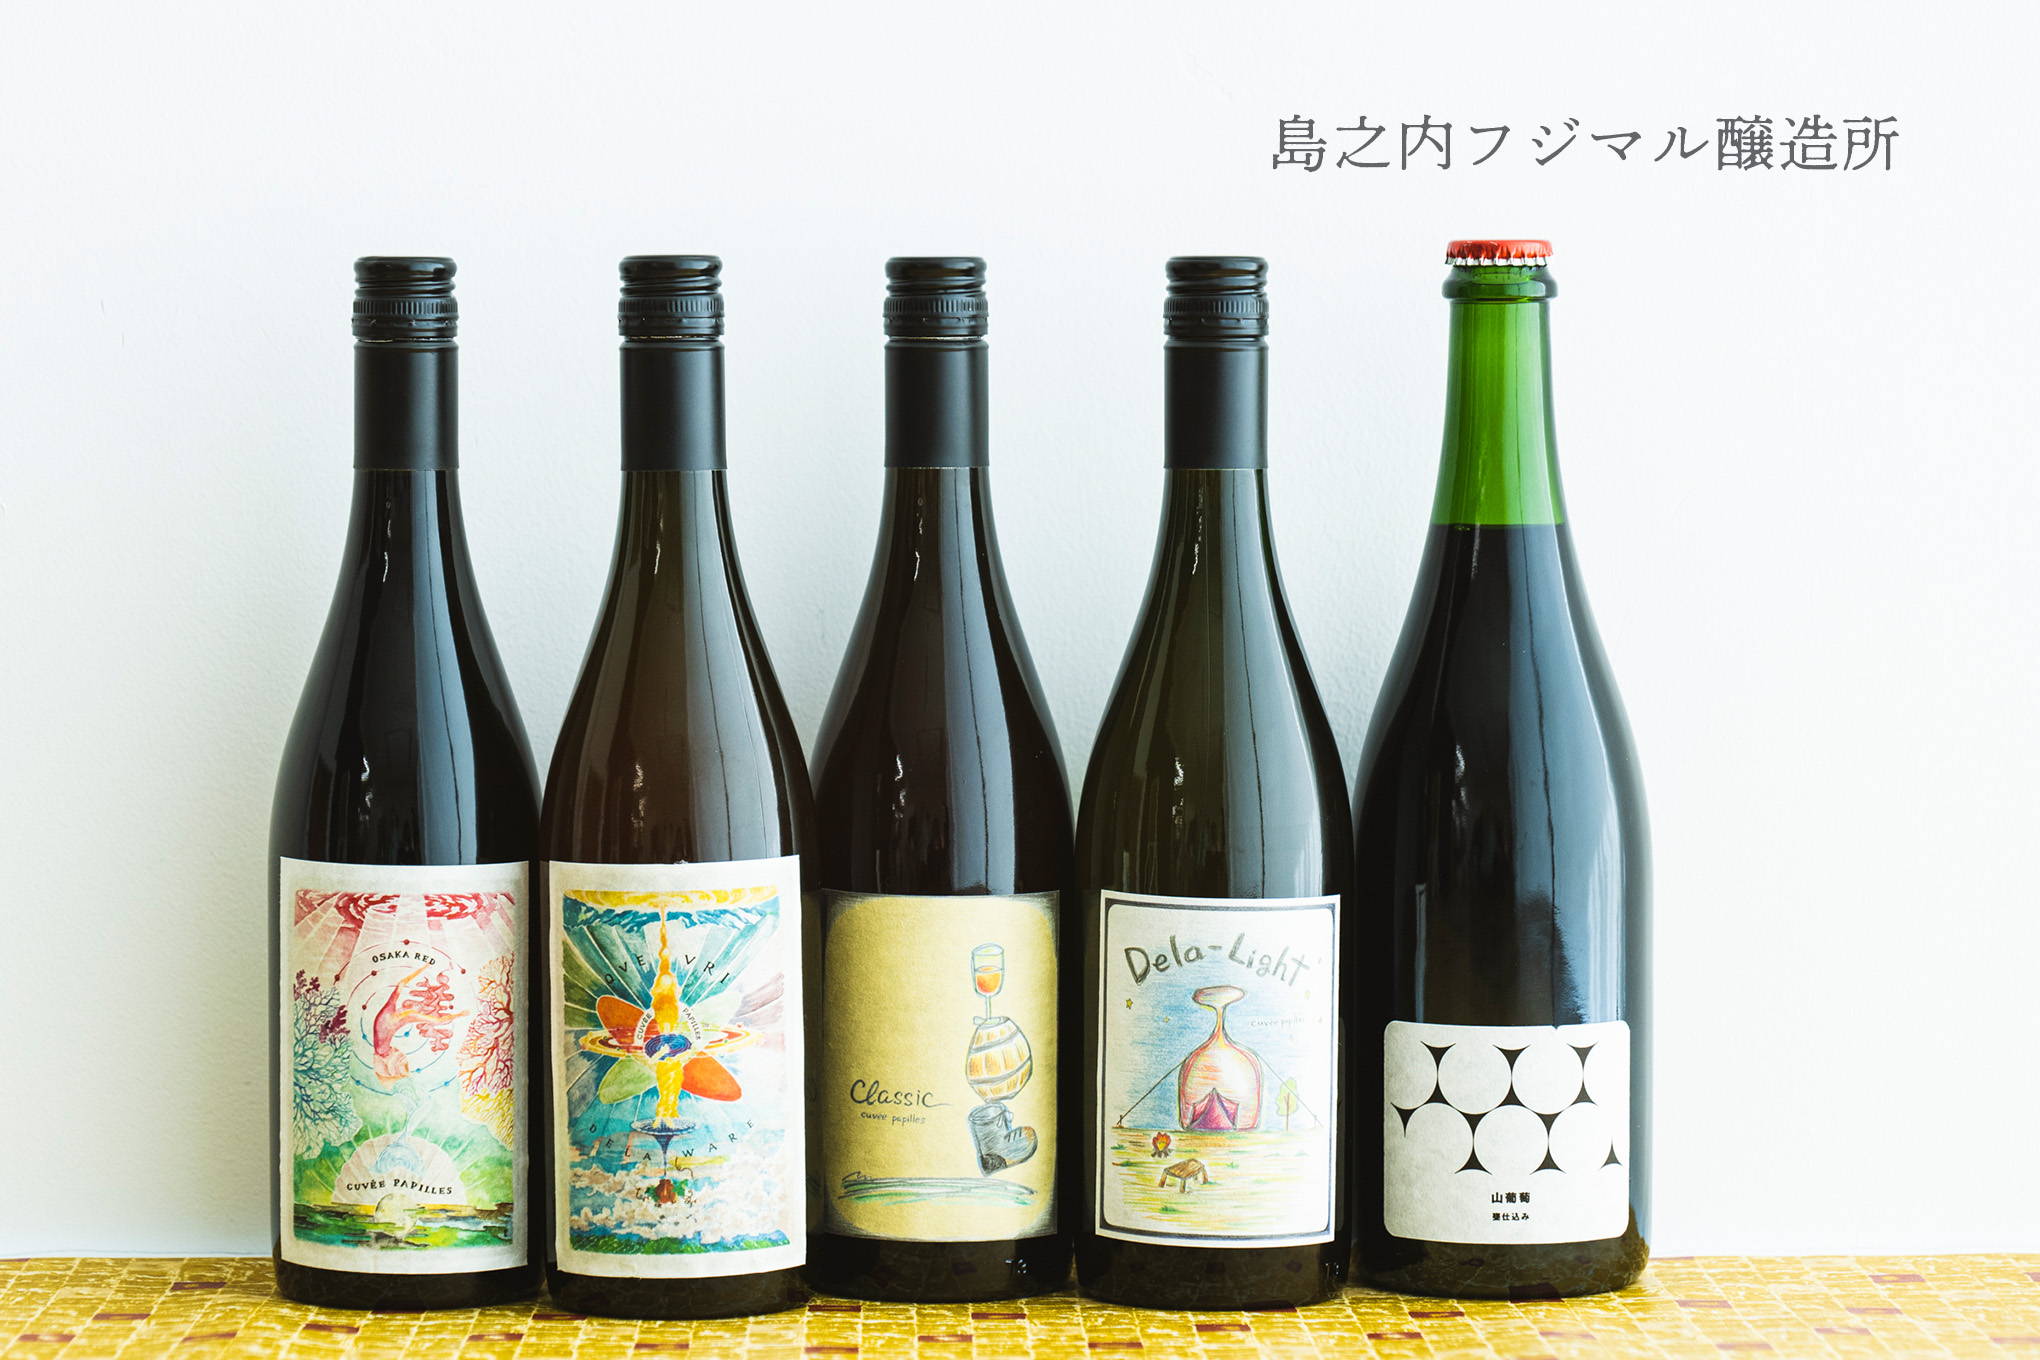 大阪の中心街に位置する、日本の都市型ワイナリーのはしりと言える存在。実はブドウ生産地にも近い『島之内フジマル醸造所』。